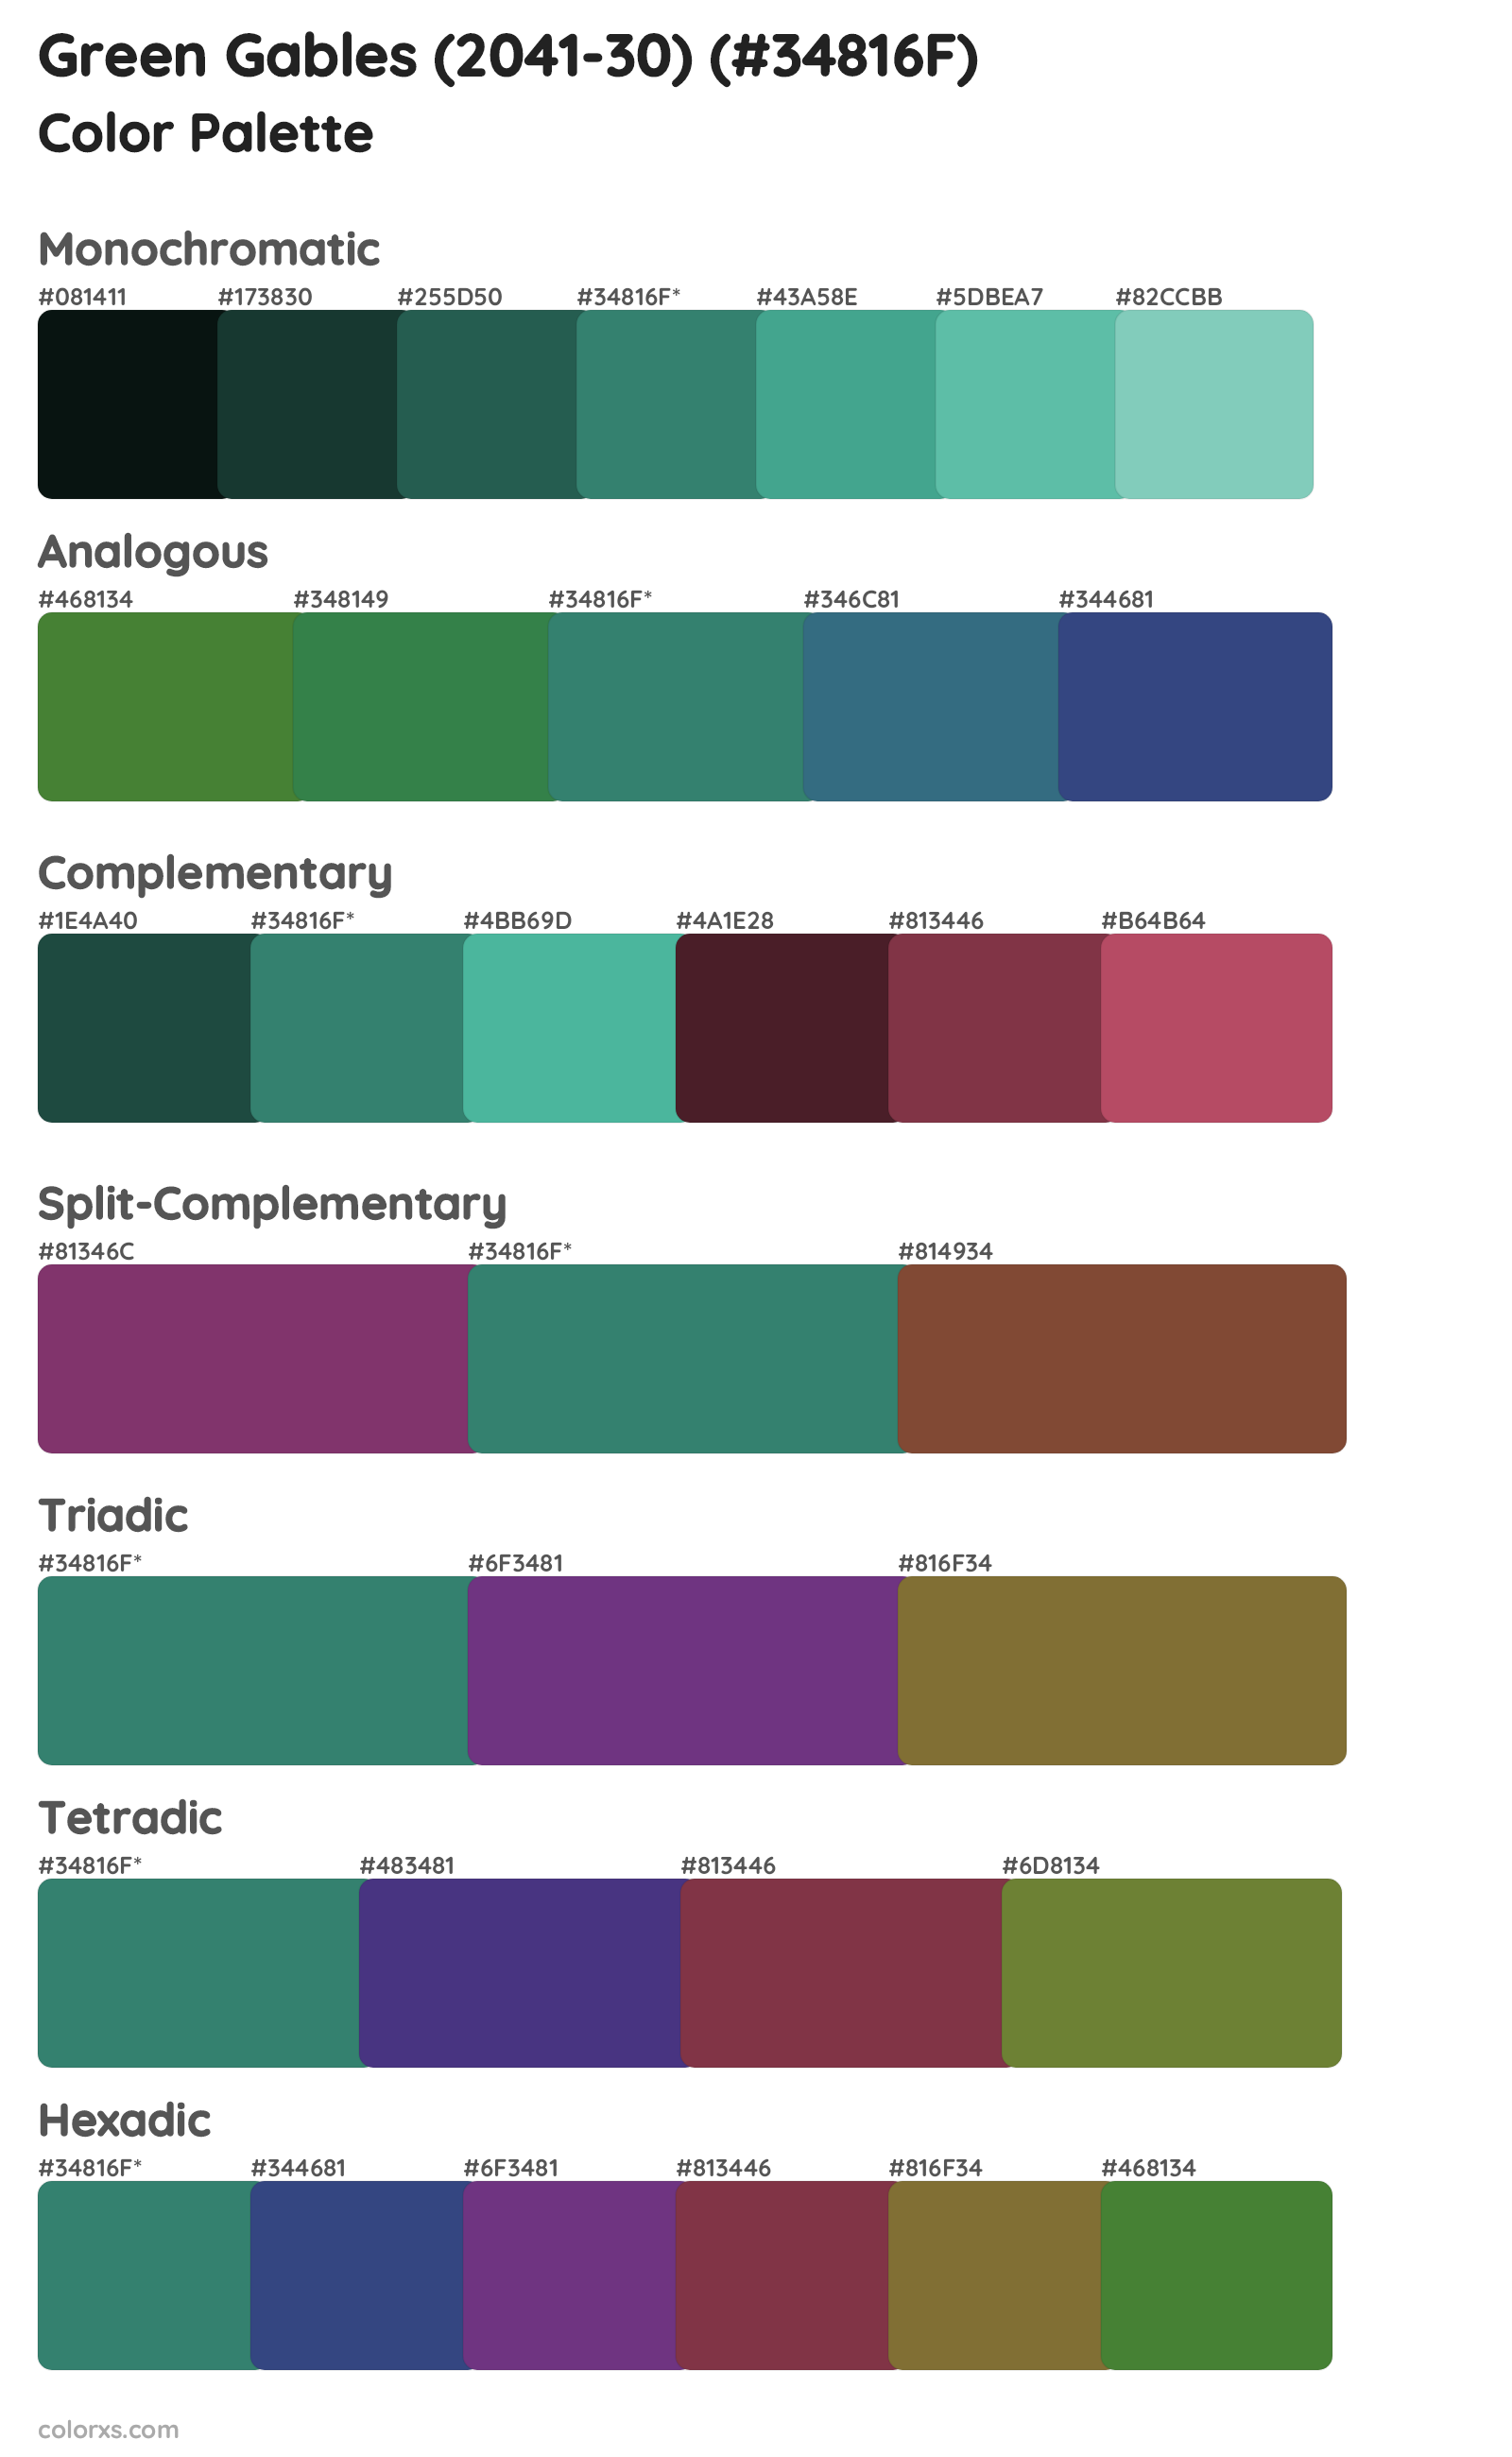 Green Gables (2041-30) Color Scheme Palettes